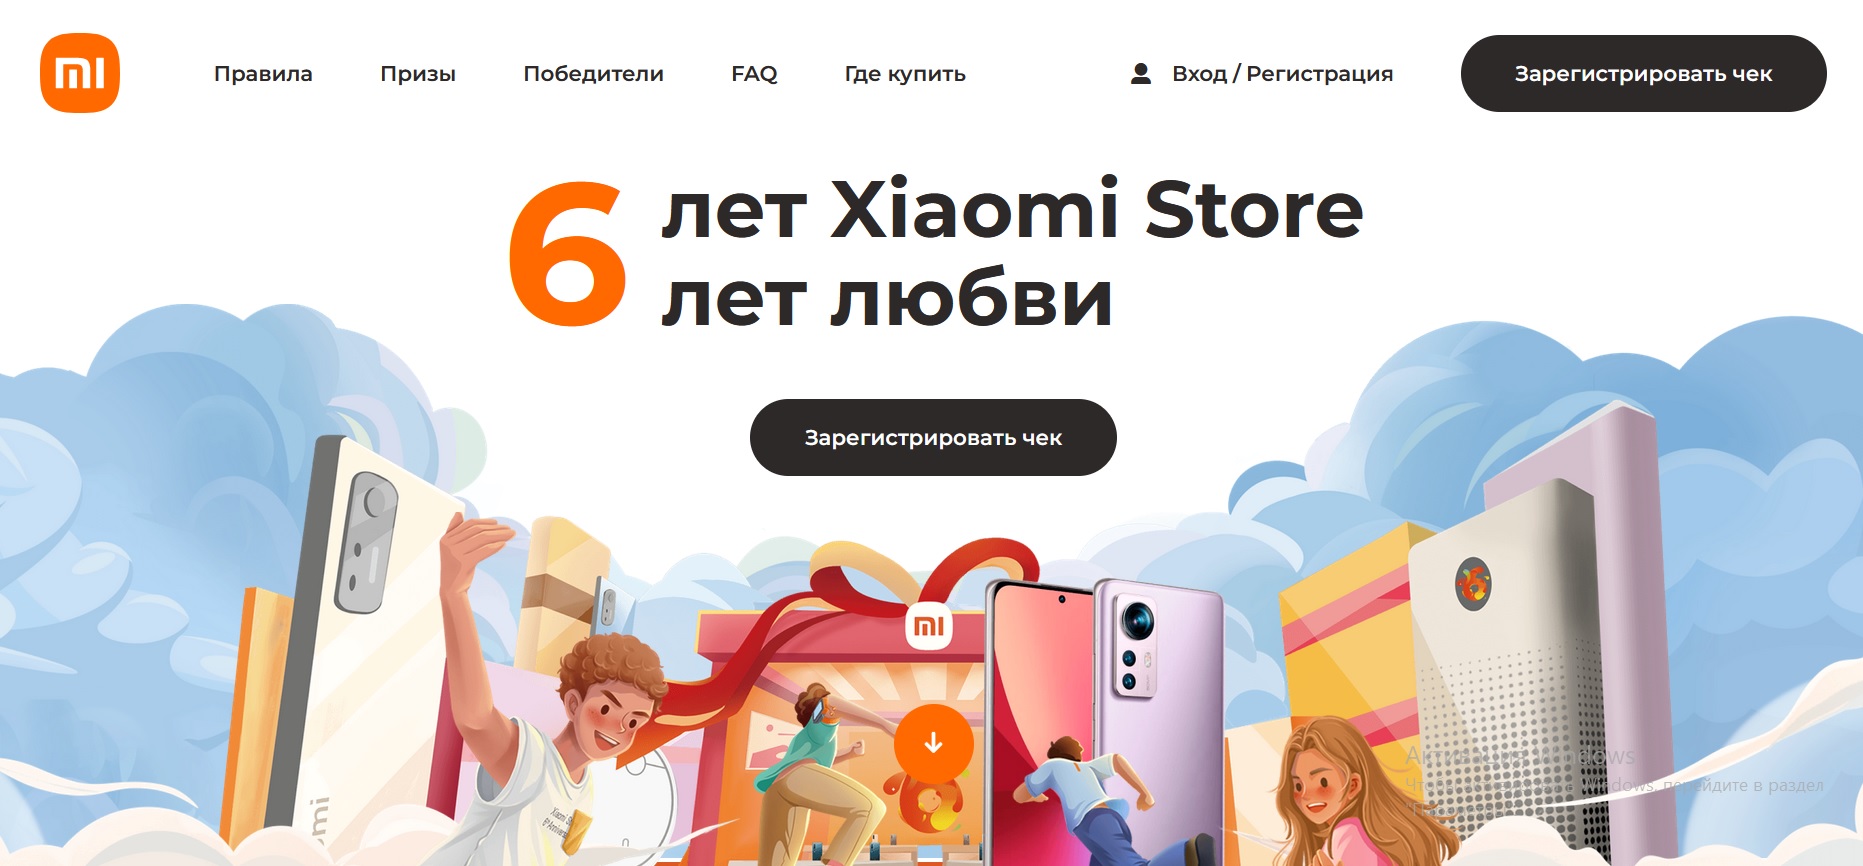 Промо-акция Xiaomi: «6 лет Xiaomi Store.6 лет любви!»